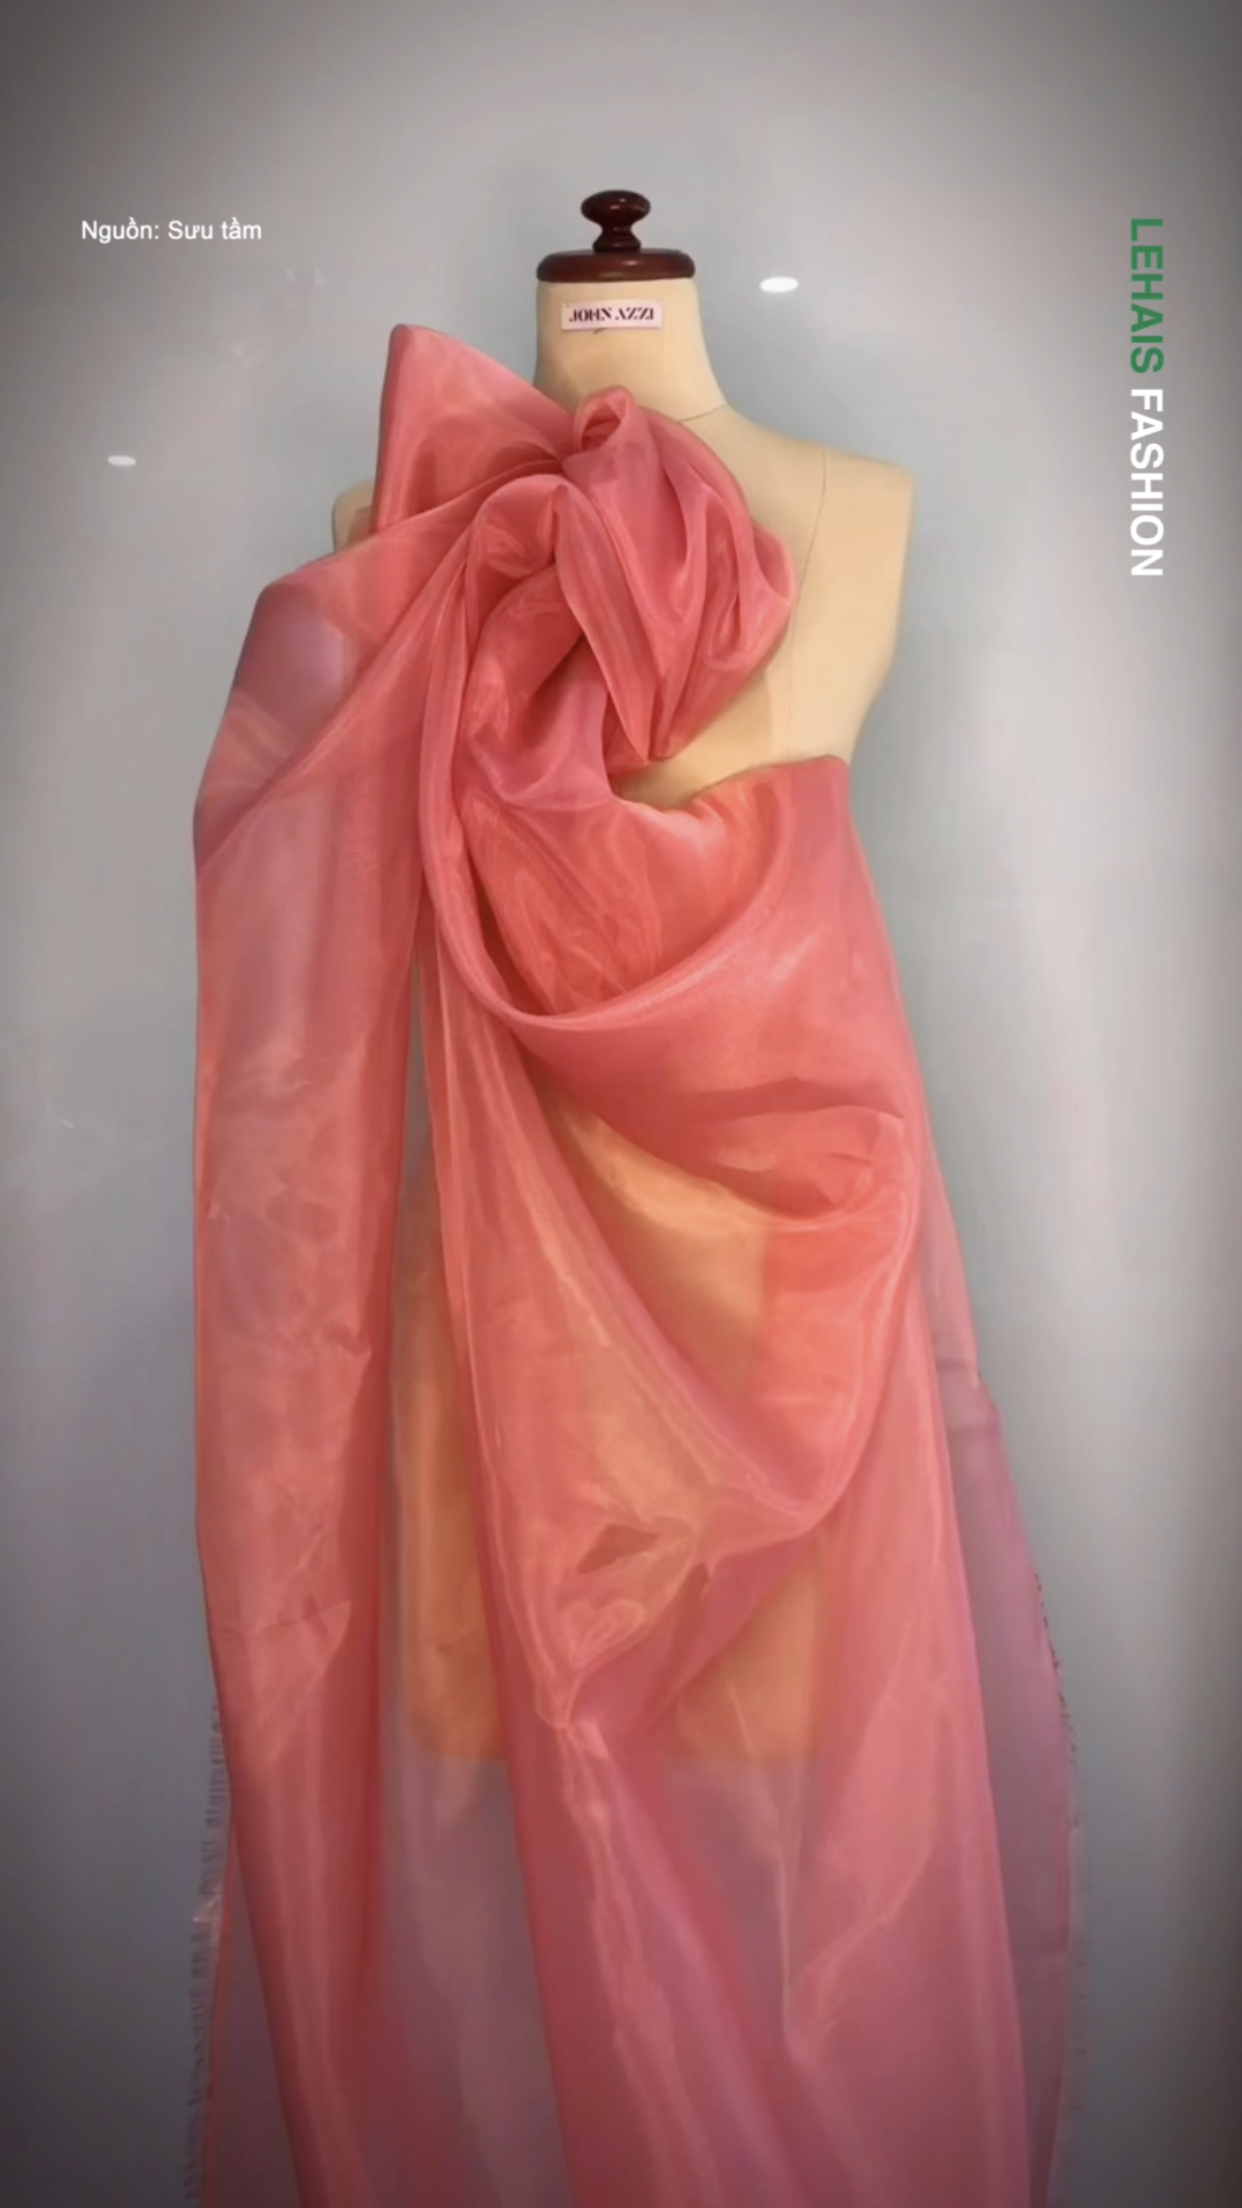 Super cute pink dress design